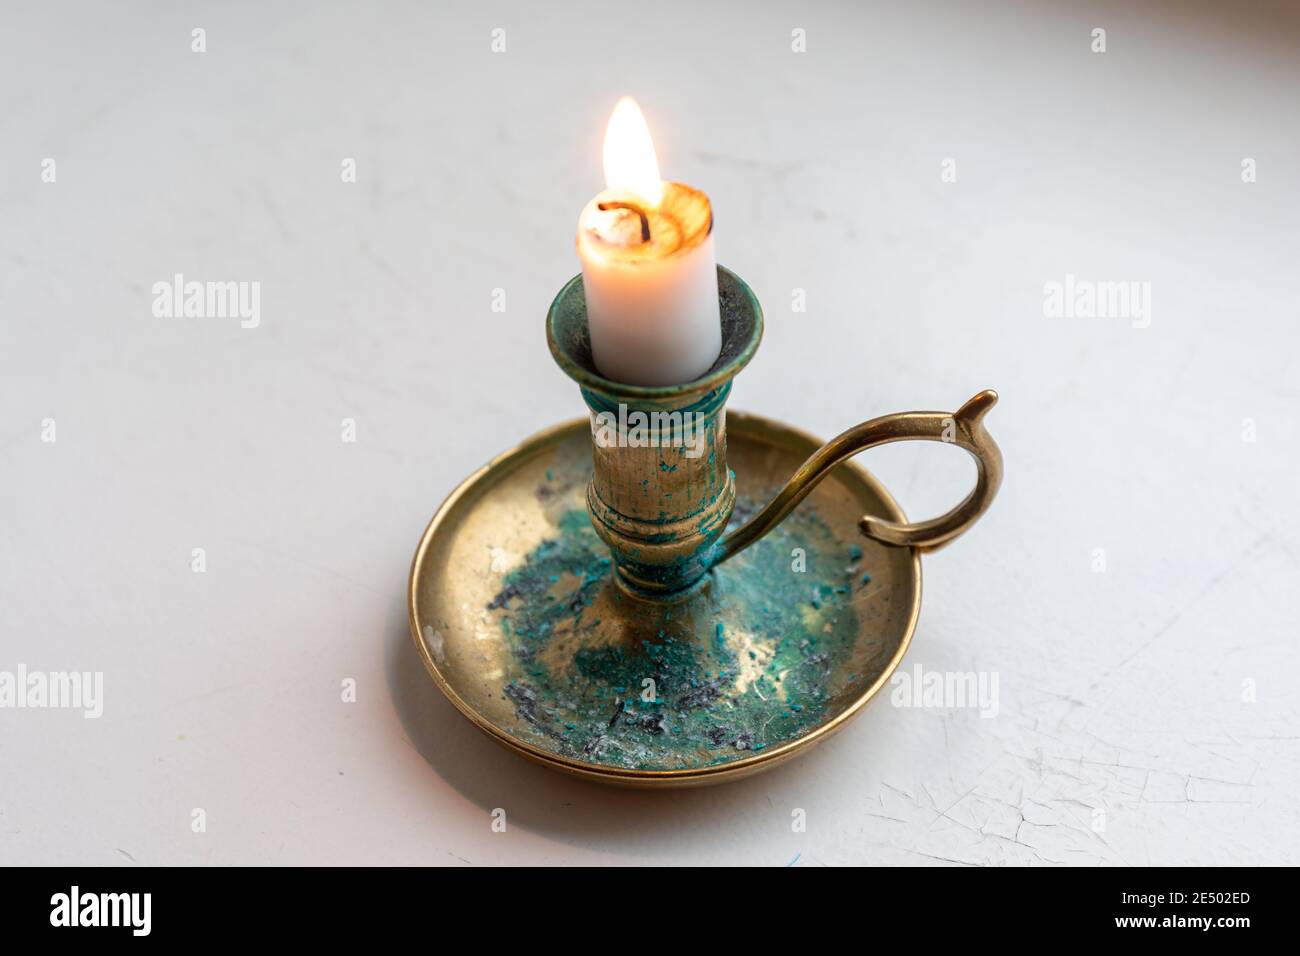 Candela ardiente en un candelabro de latón o candelabro con pátina verde o verdigris Foto de stock